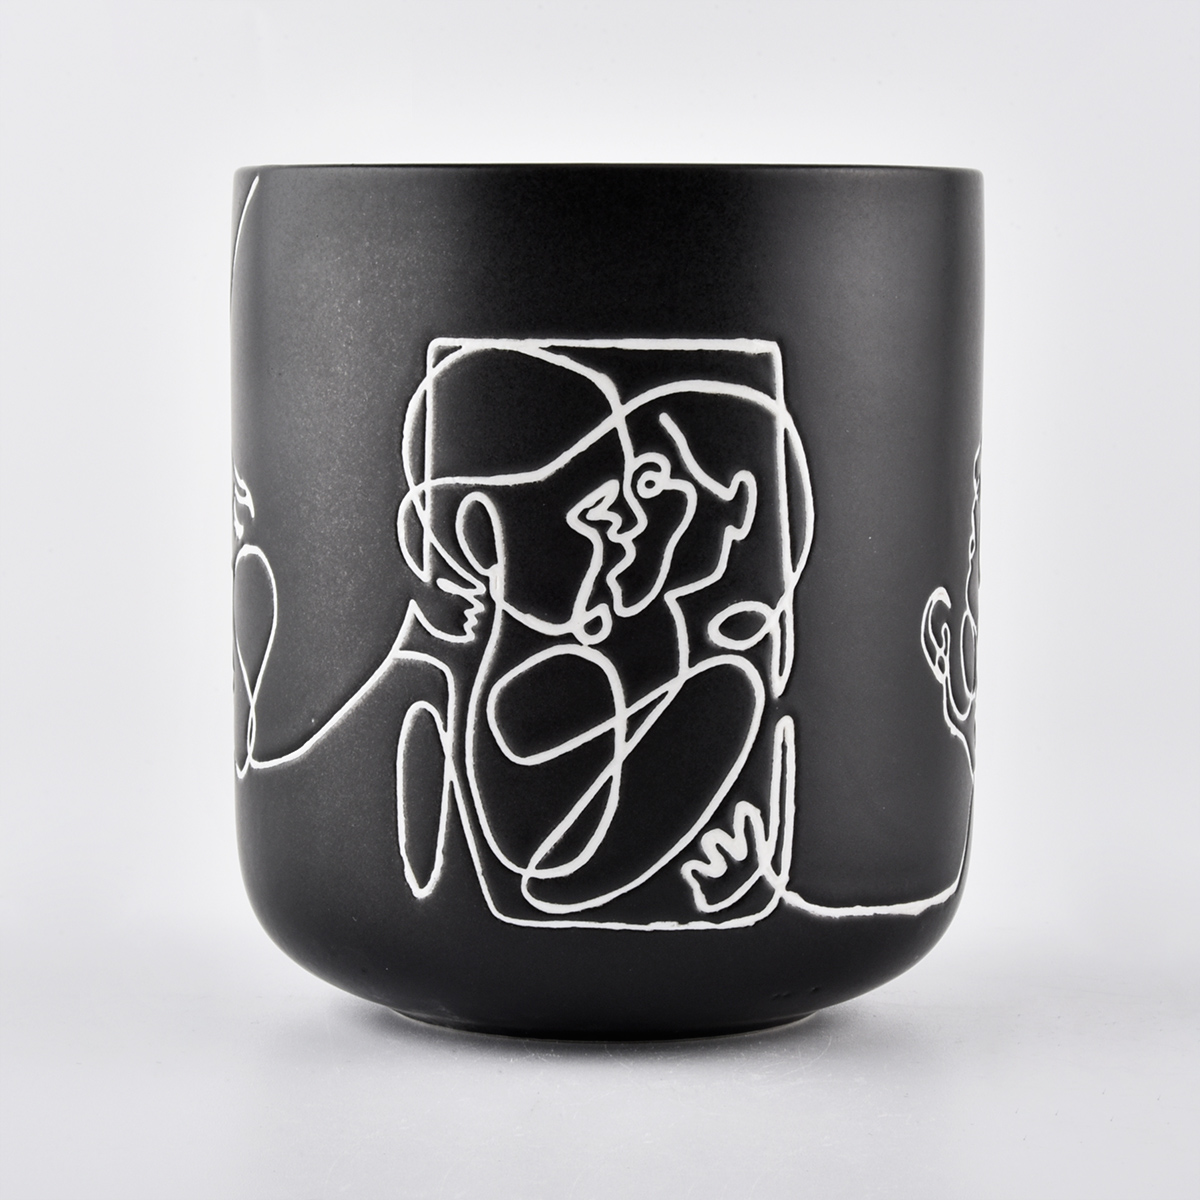 10oz zwarte keramische kaarsenpot met schets artwork